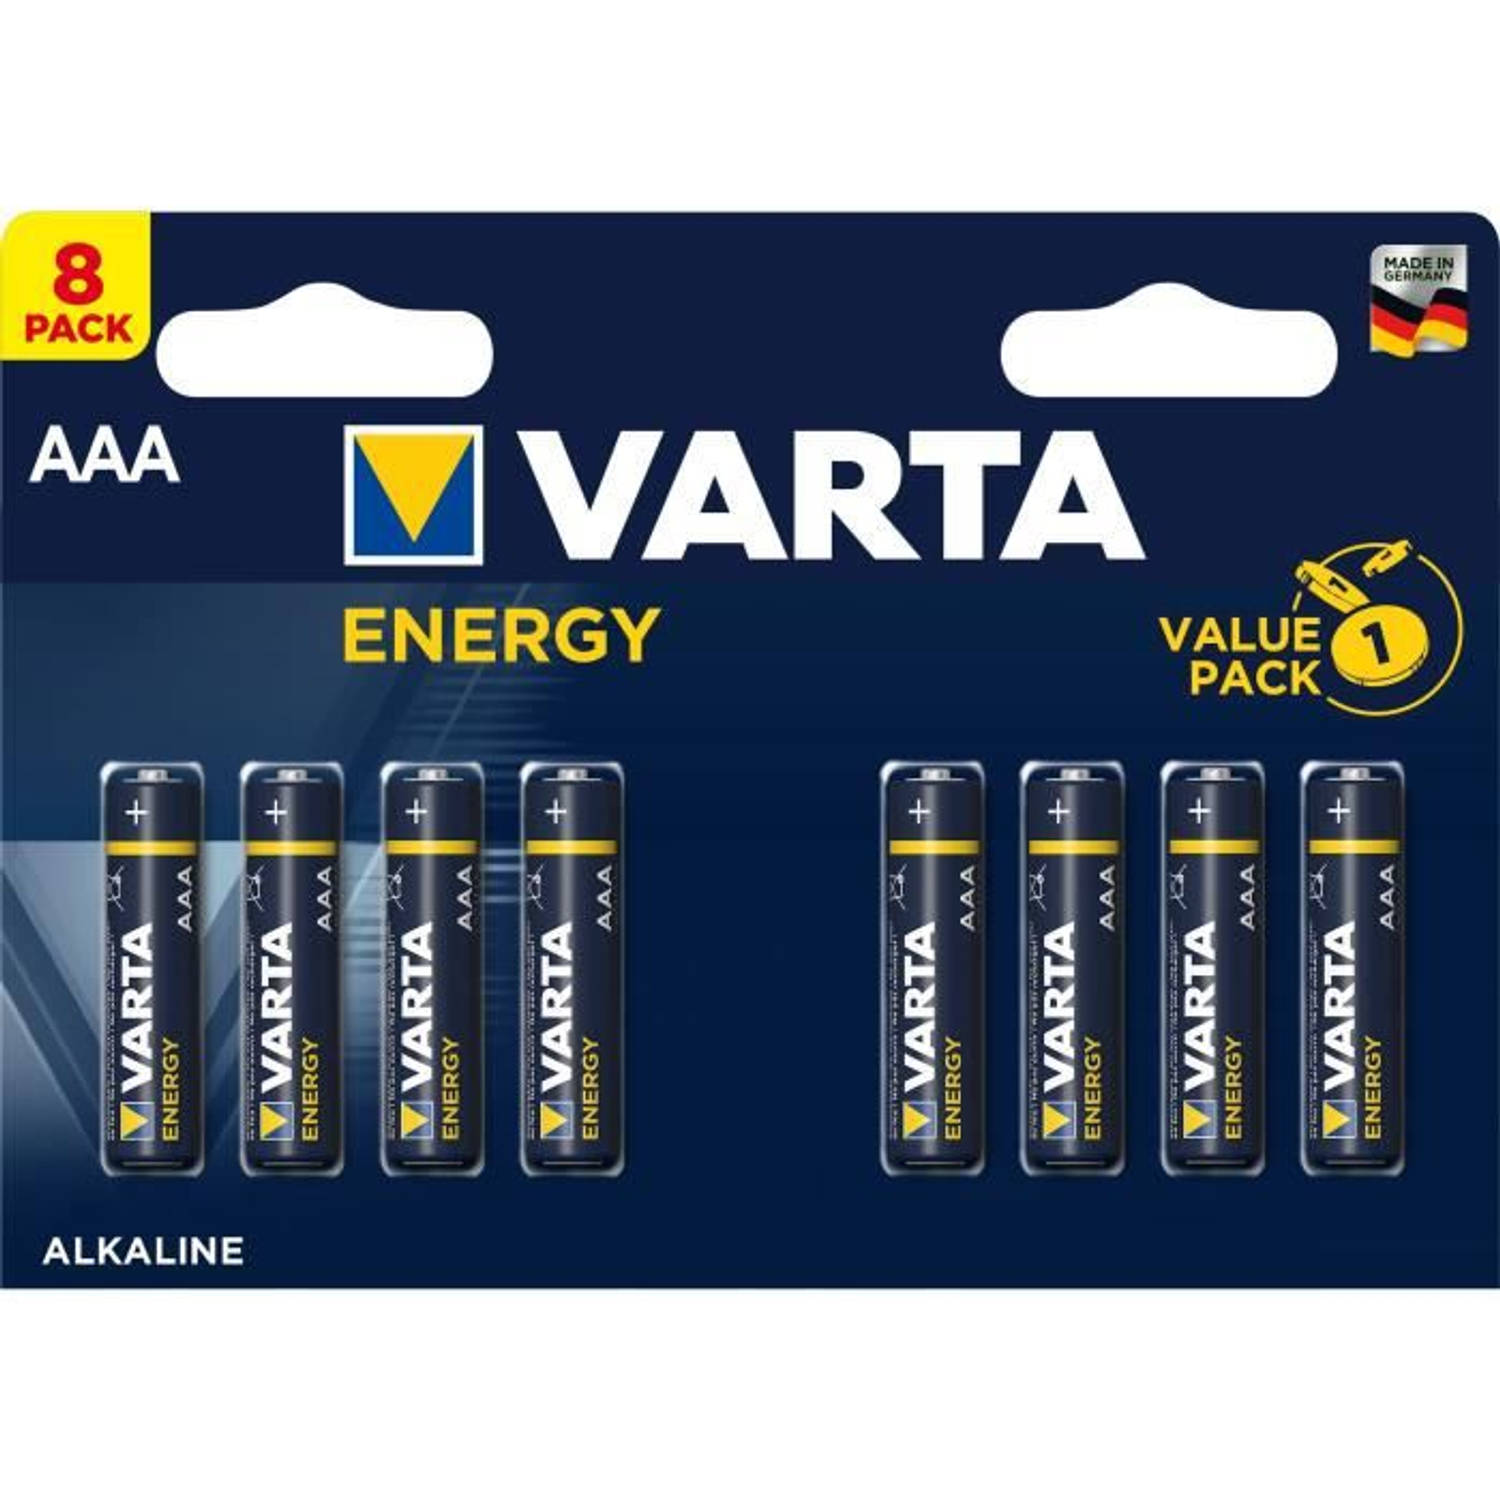 VARTA - Pack van 8 alkalinebatterijen Energie AAA (LR03) 1,5V